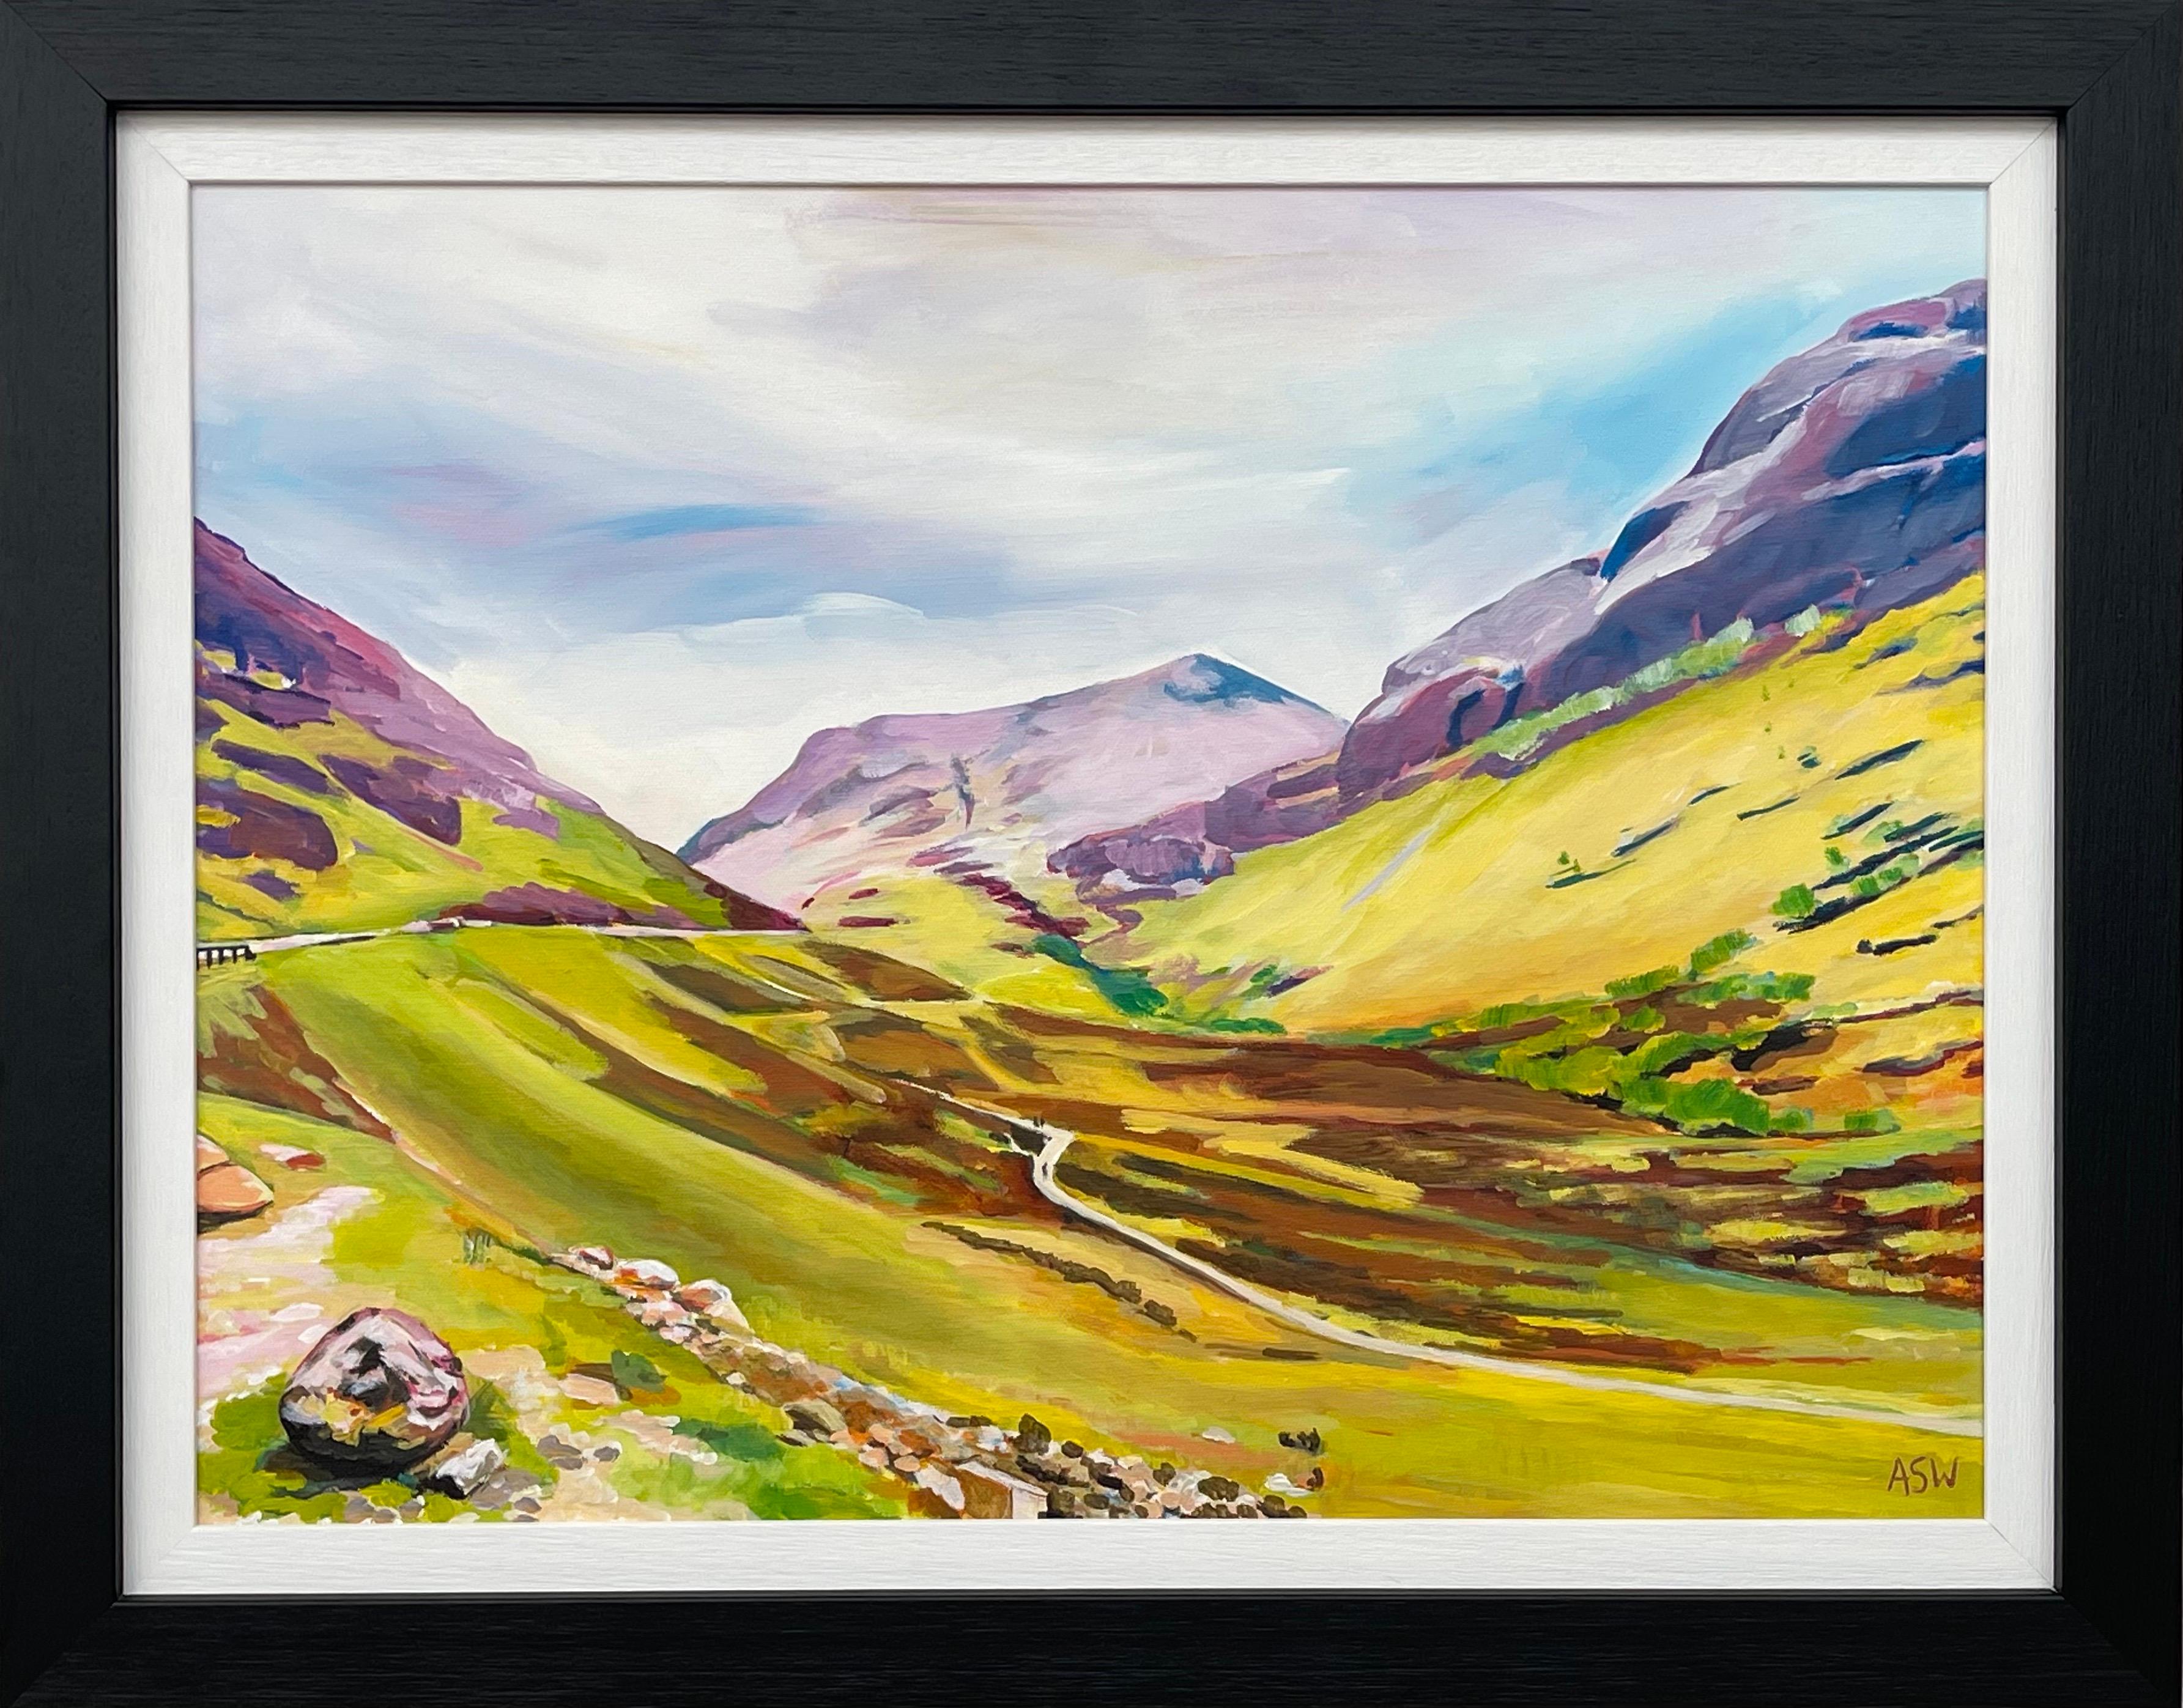 Abstract Painting Angela Wakefield - Peinture de paysage abstrait et colorée d'un artiste contemporain des Highlands écossais